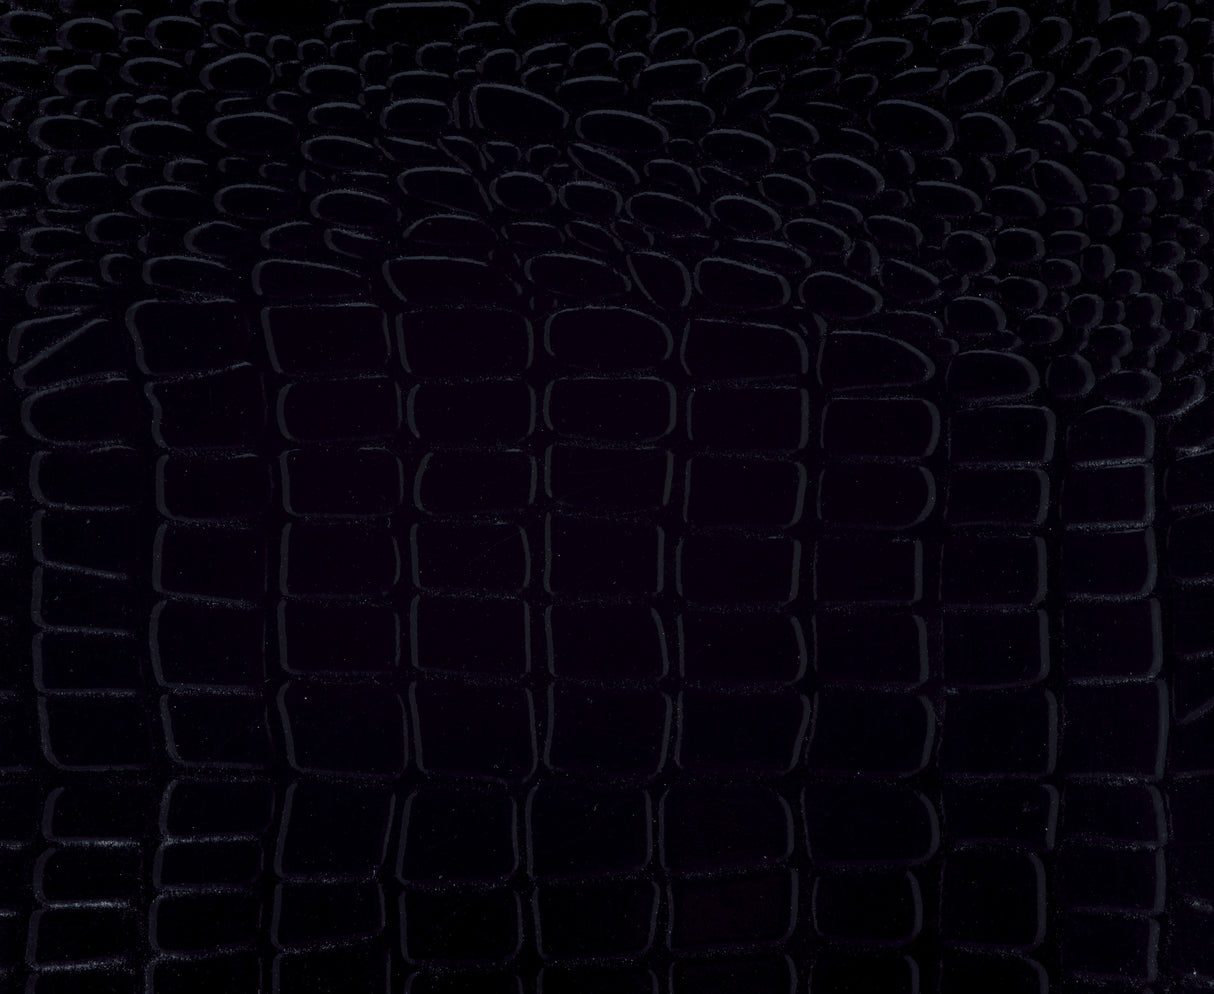 Allura Black LED Upholstered Panel Youth Bedroom Set - Luna Furniture